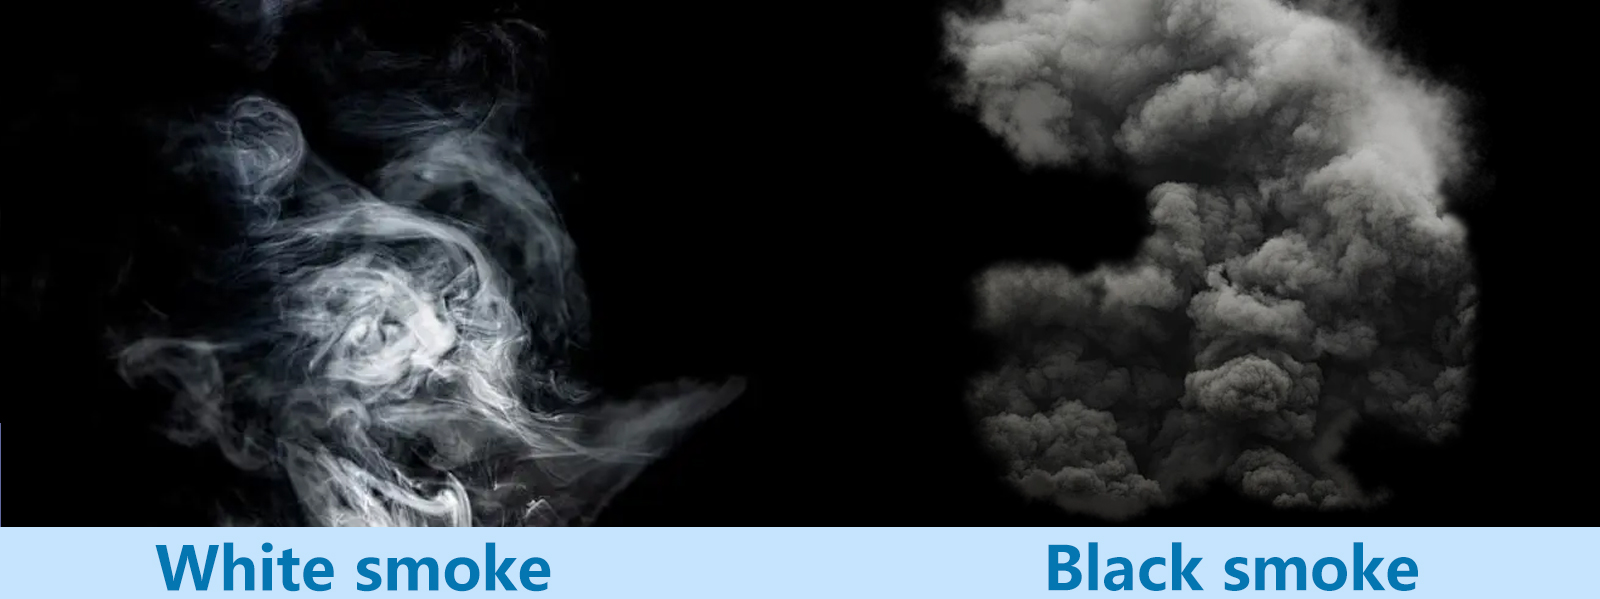 Forskjellen mellom hvit røyk og svart røyk i firemuk